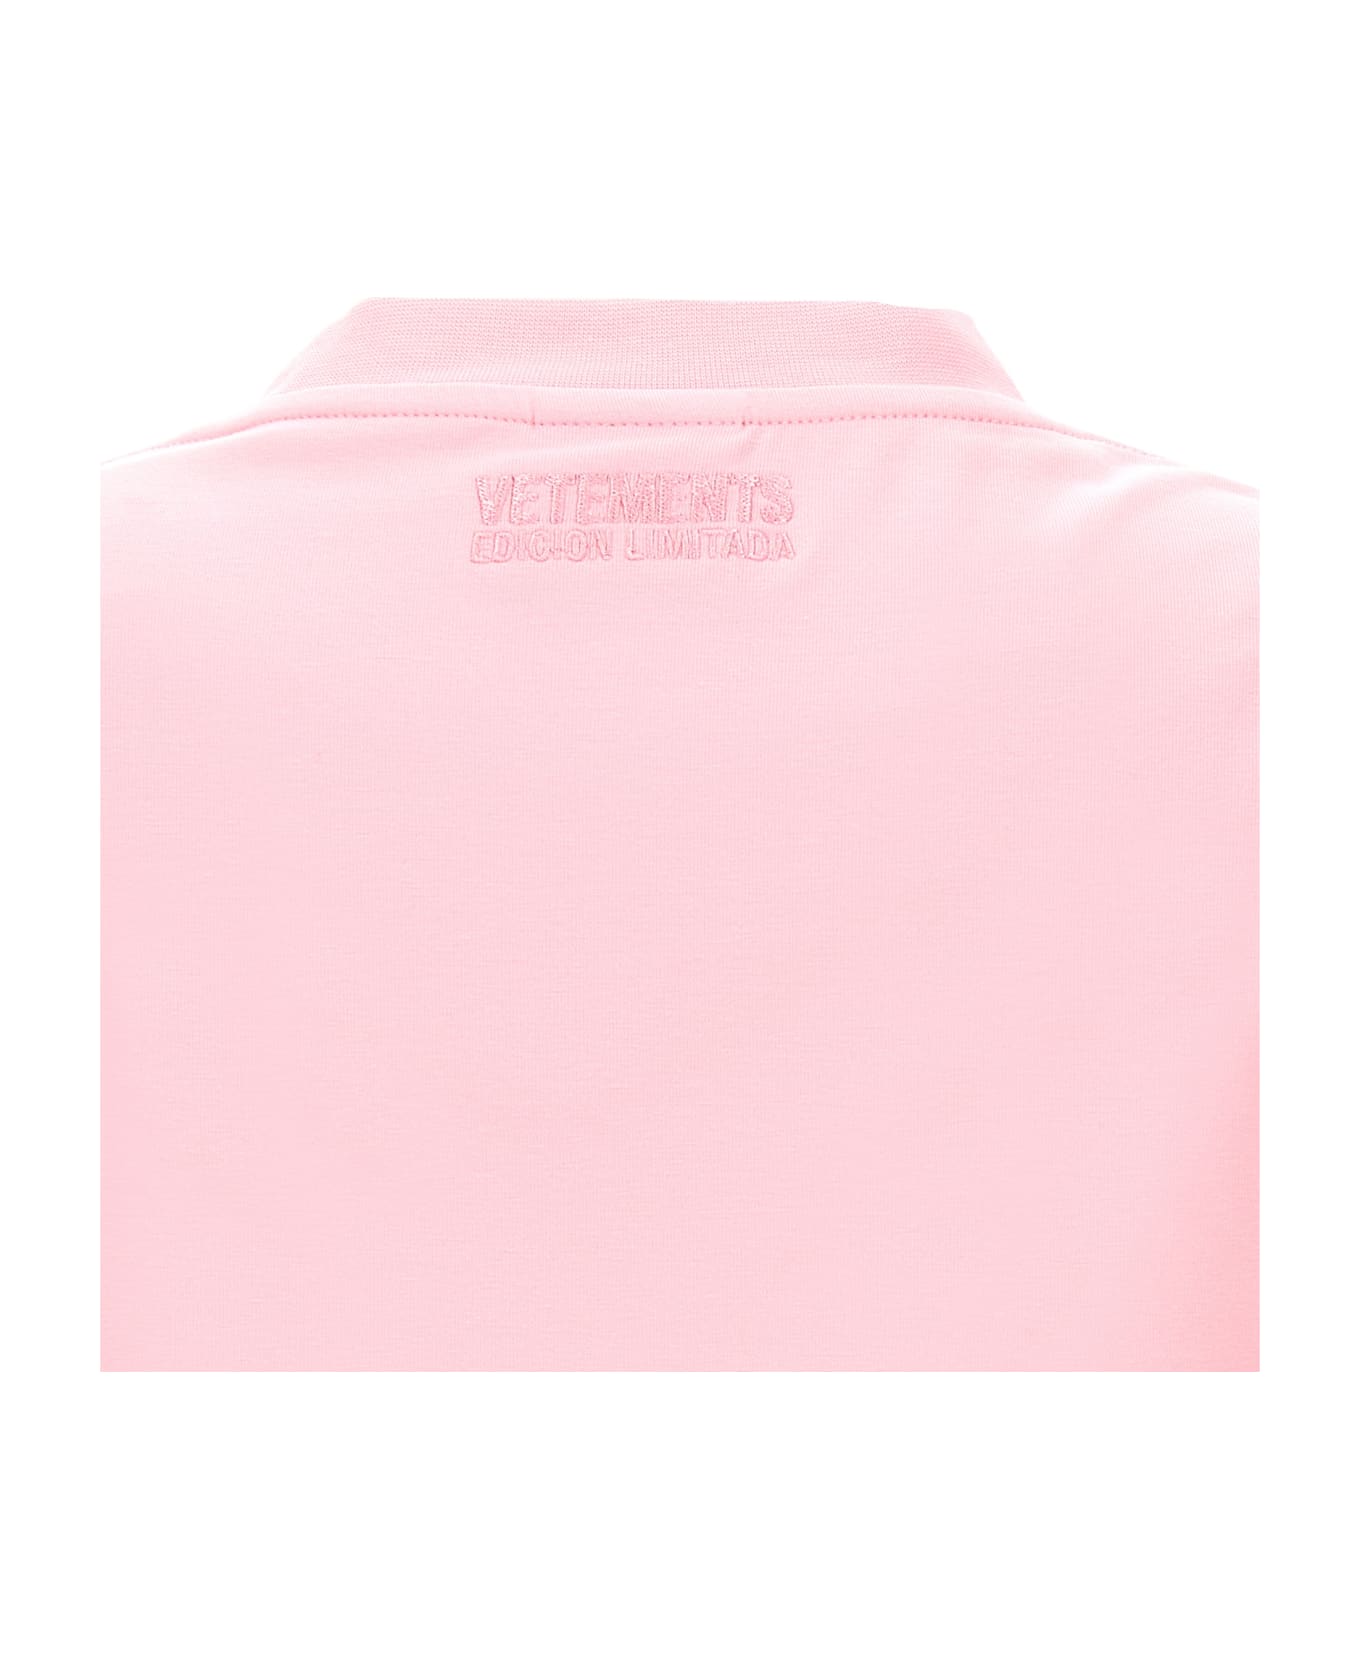 VETEMENTS 'te Quiero' T-shirt - Pink